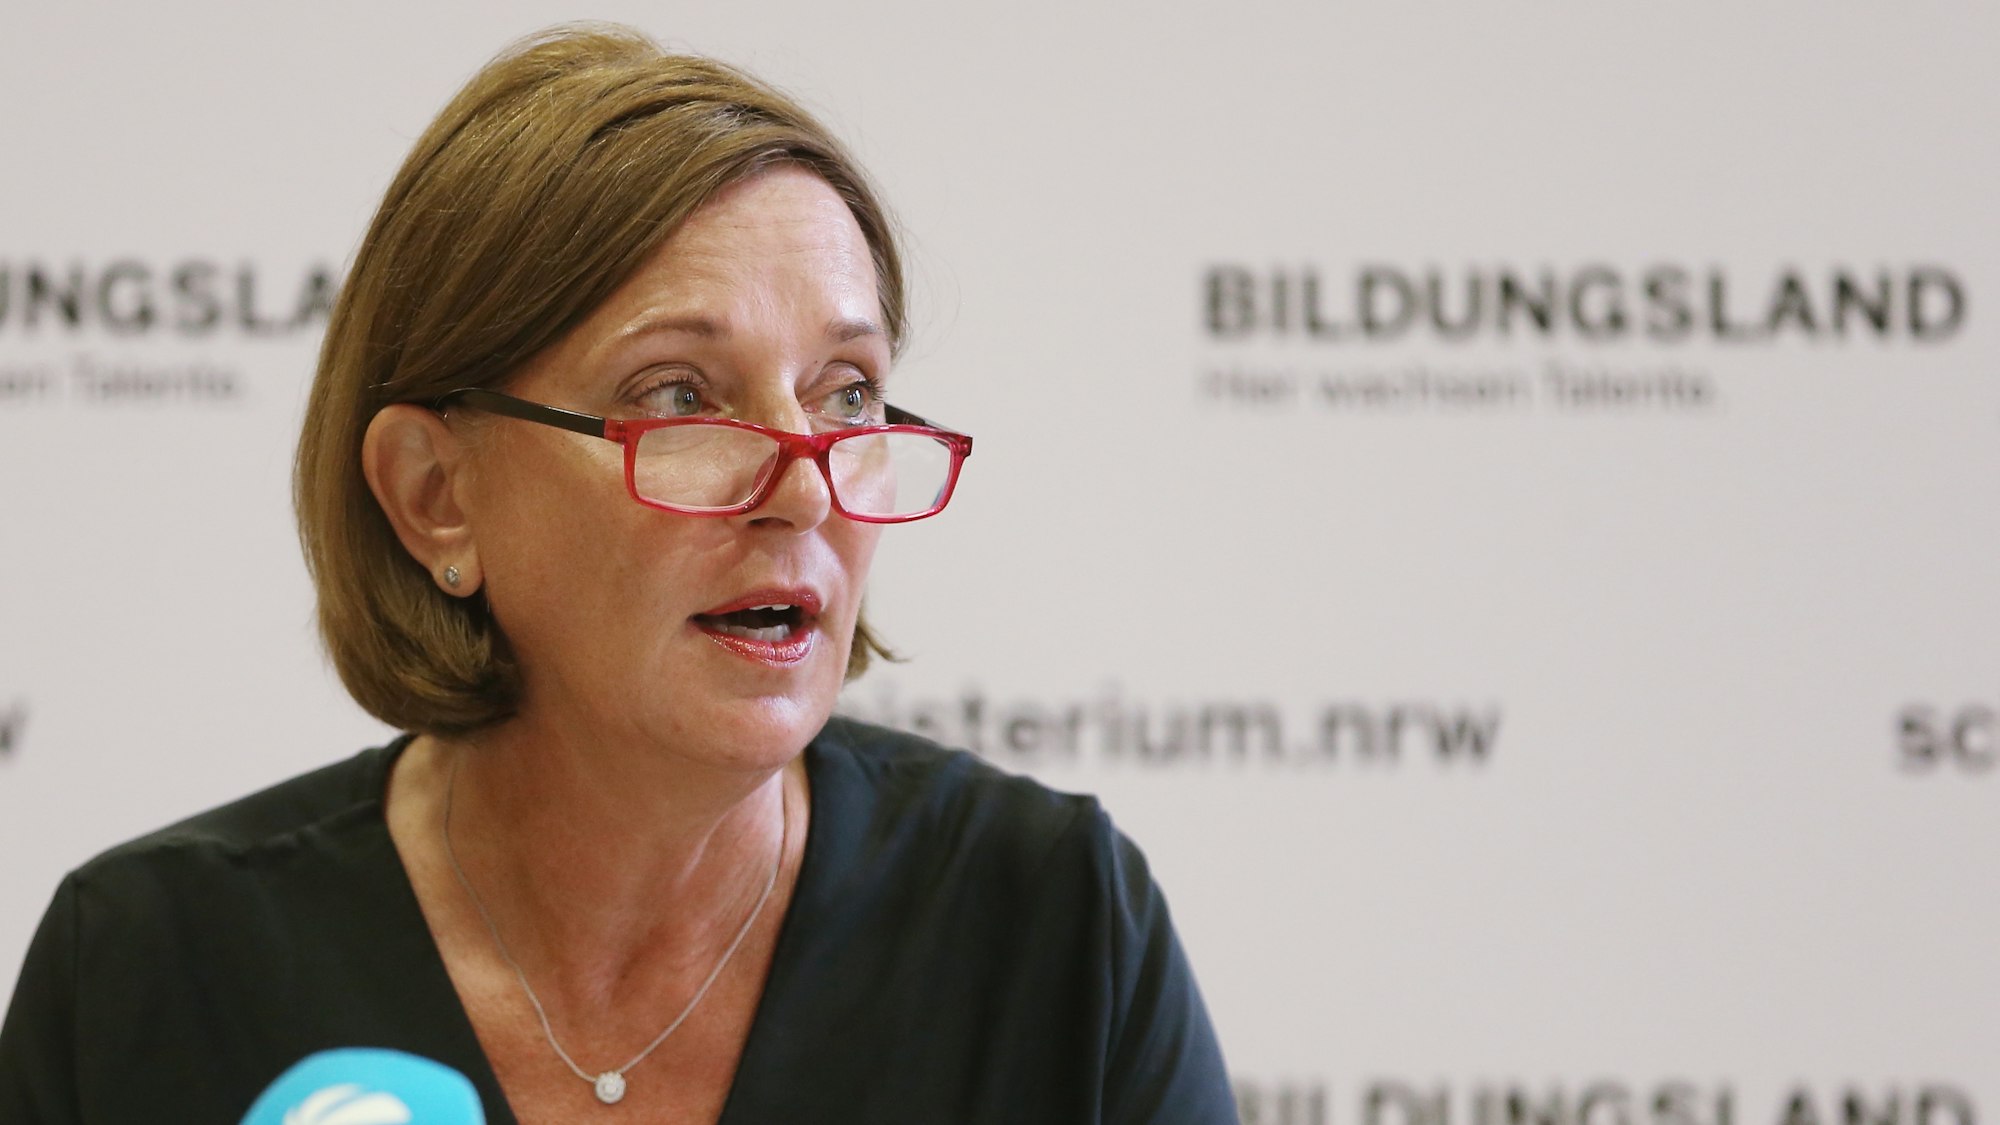 Die nordrhein-westfälische Schulministerin Yvonne Gebauer spricht bei einem Pressegespräch über aktuelle schulpolitische Themen.